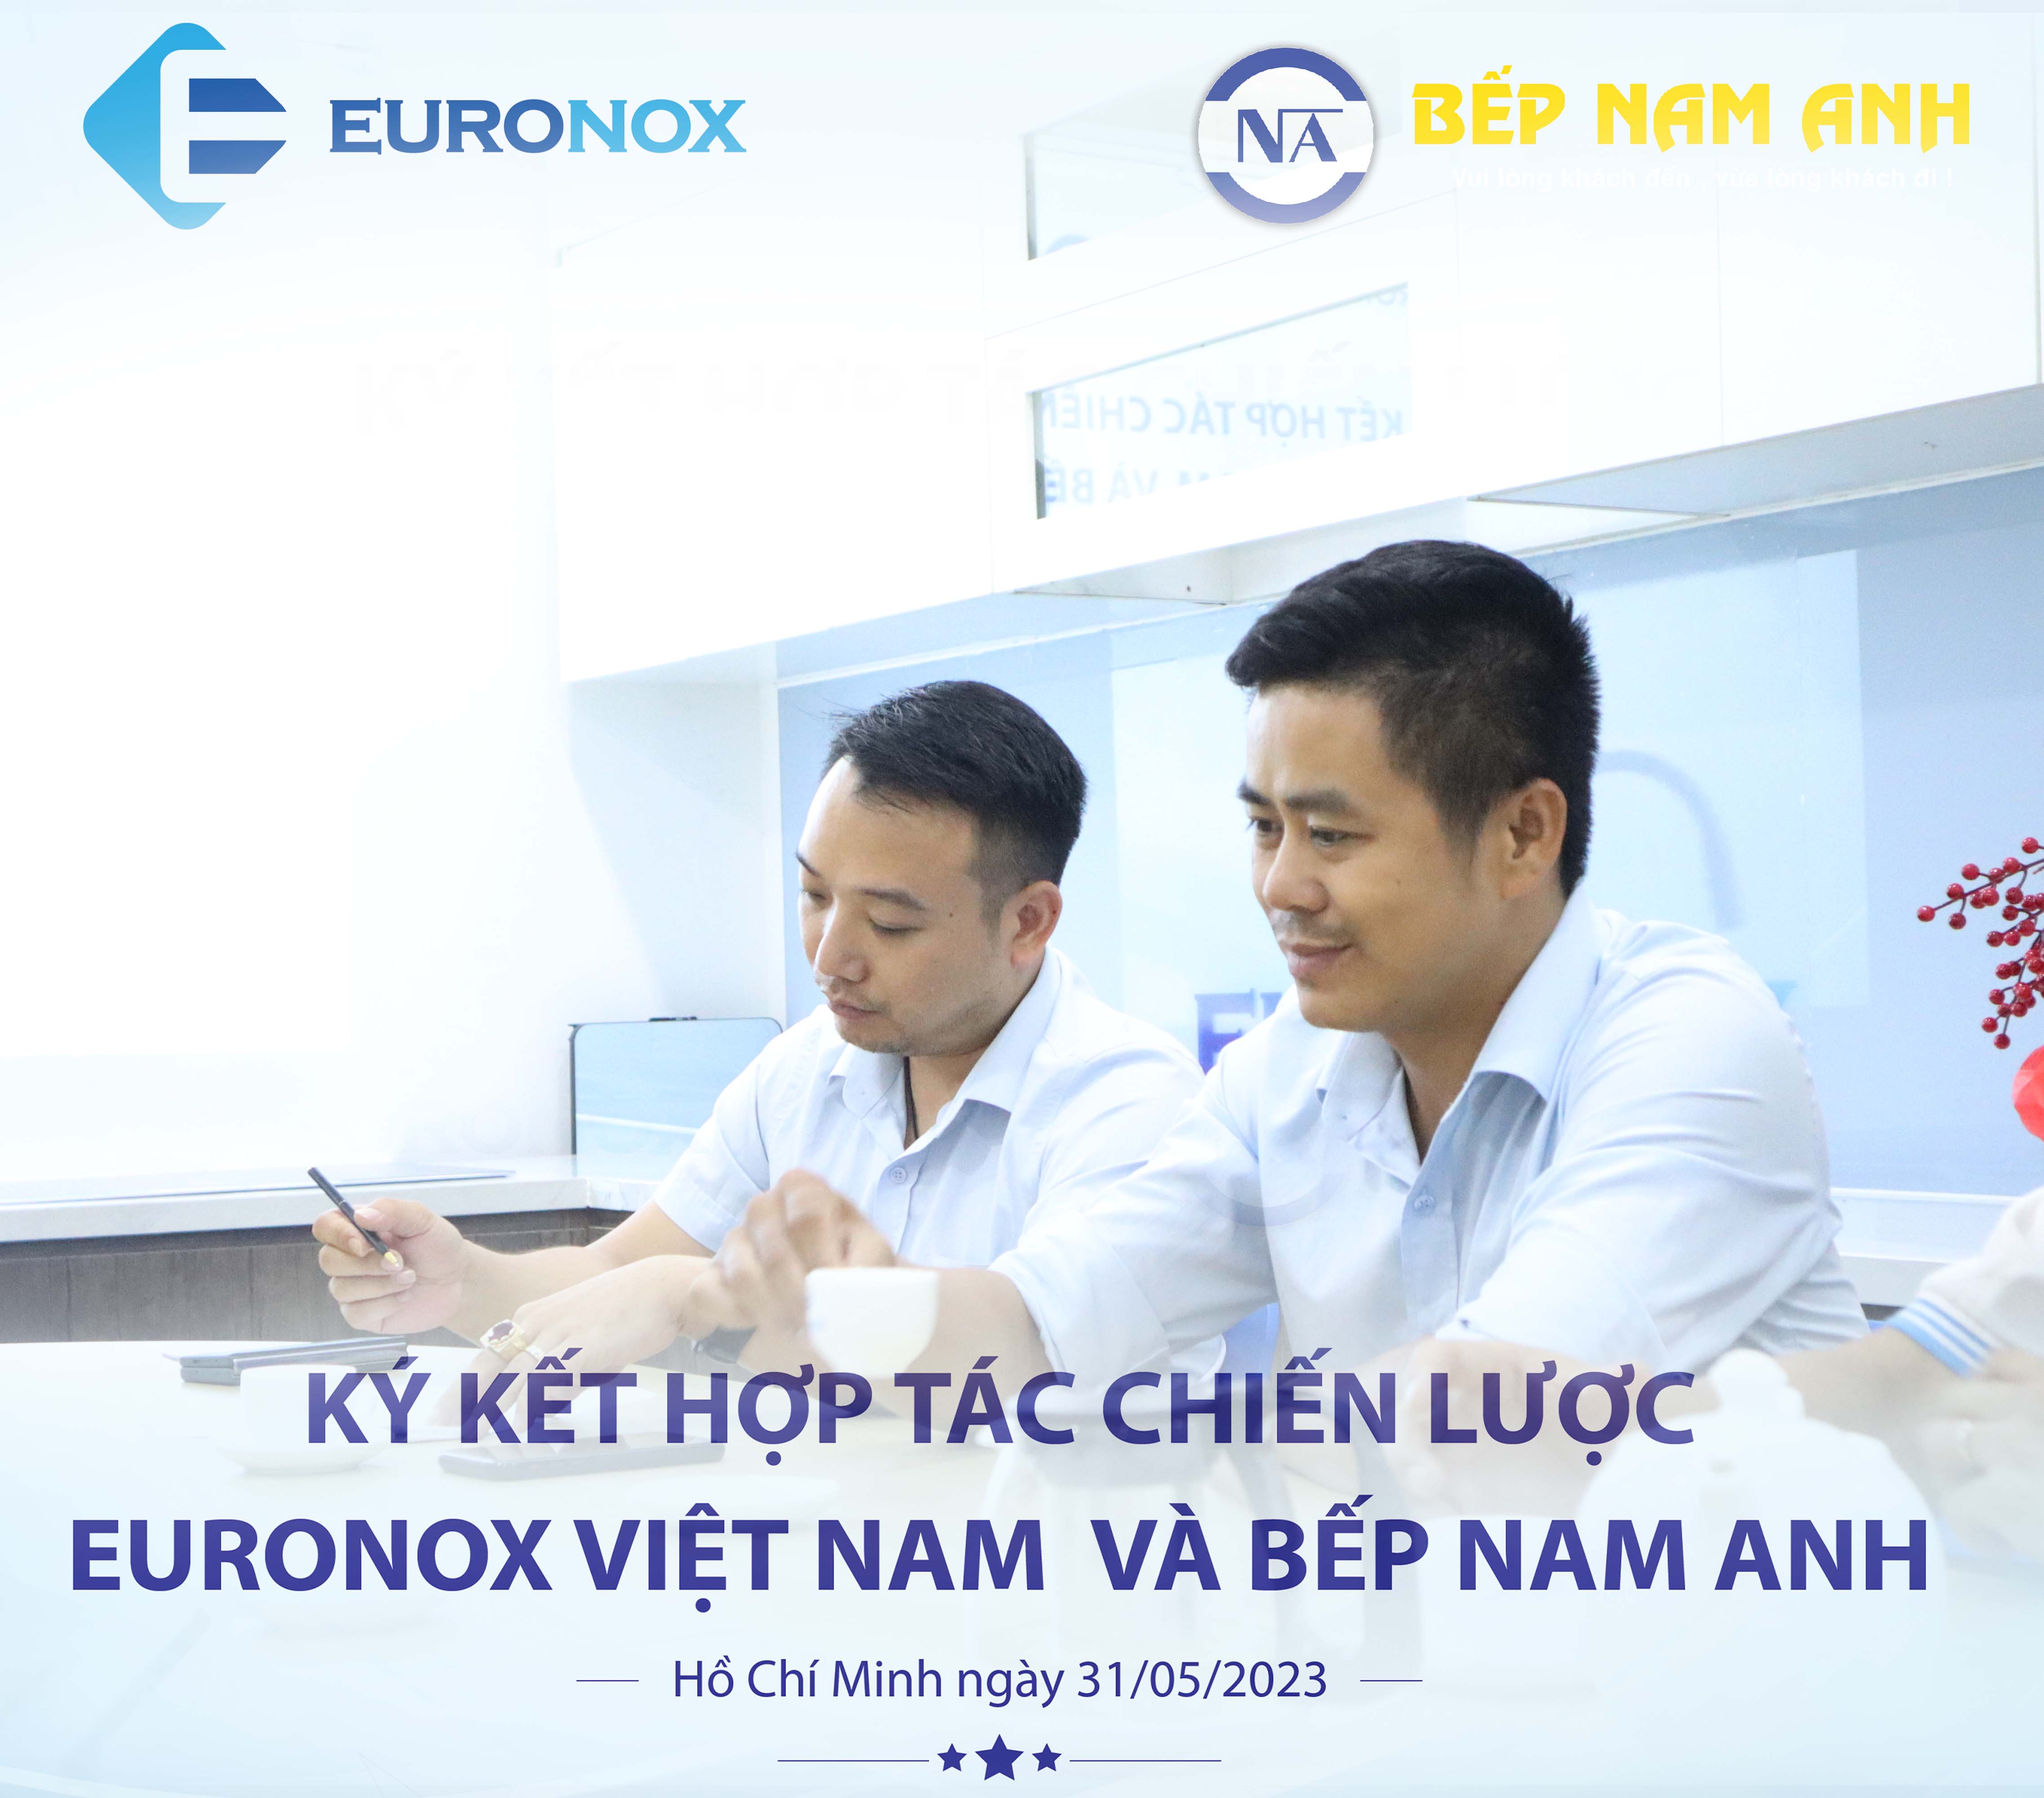 Euronox Việt Nam và Bếp Nam Anh ký hợp đồng chiến lược